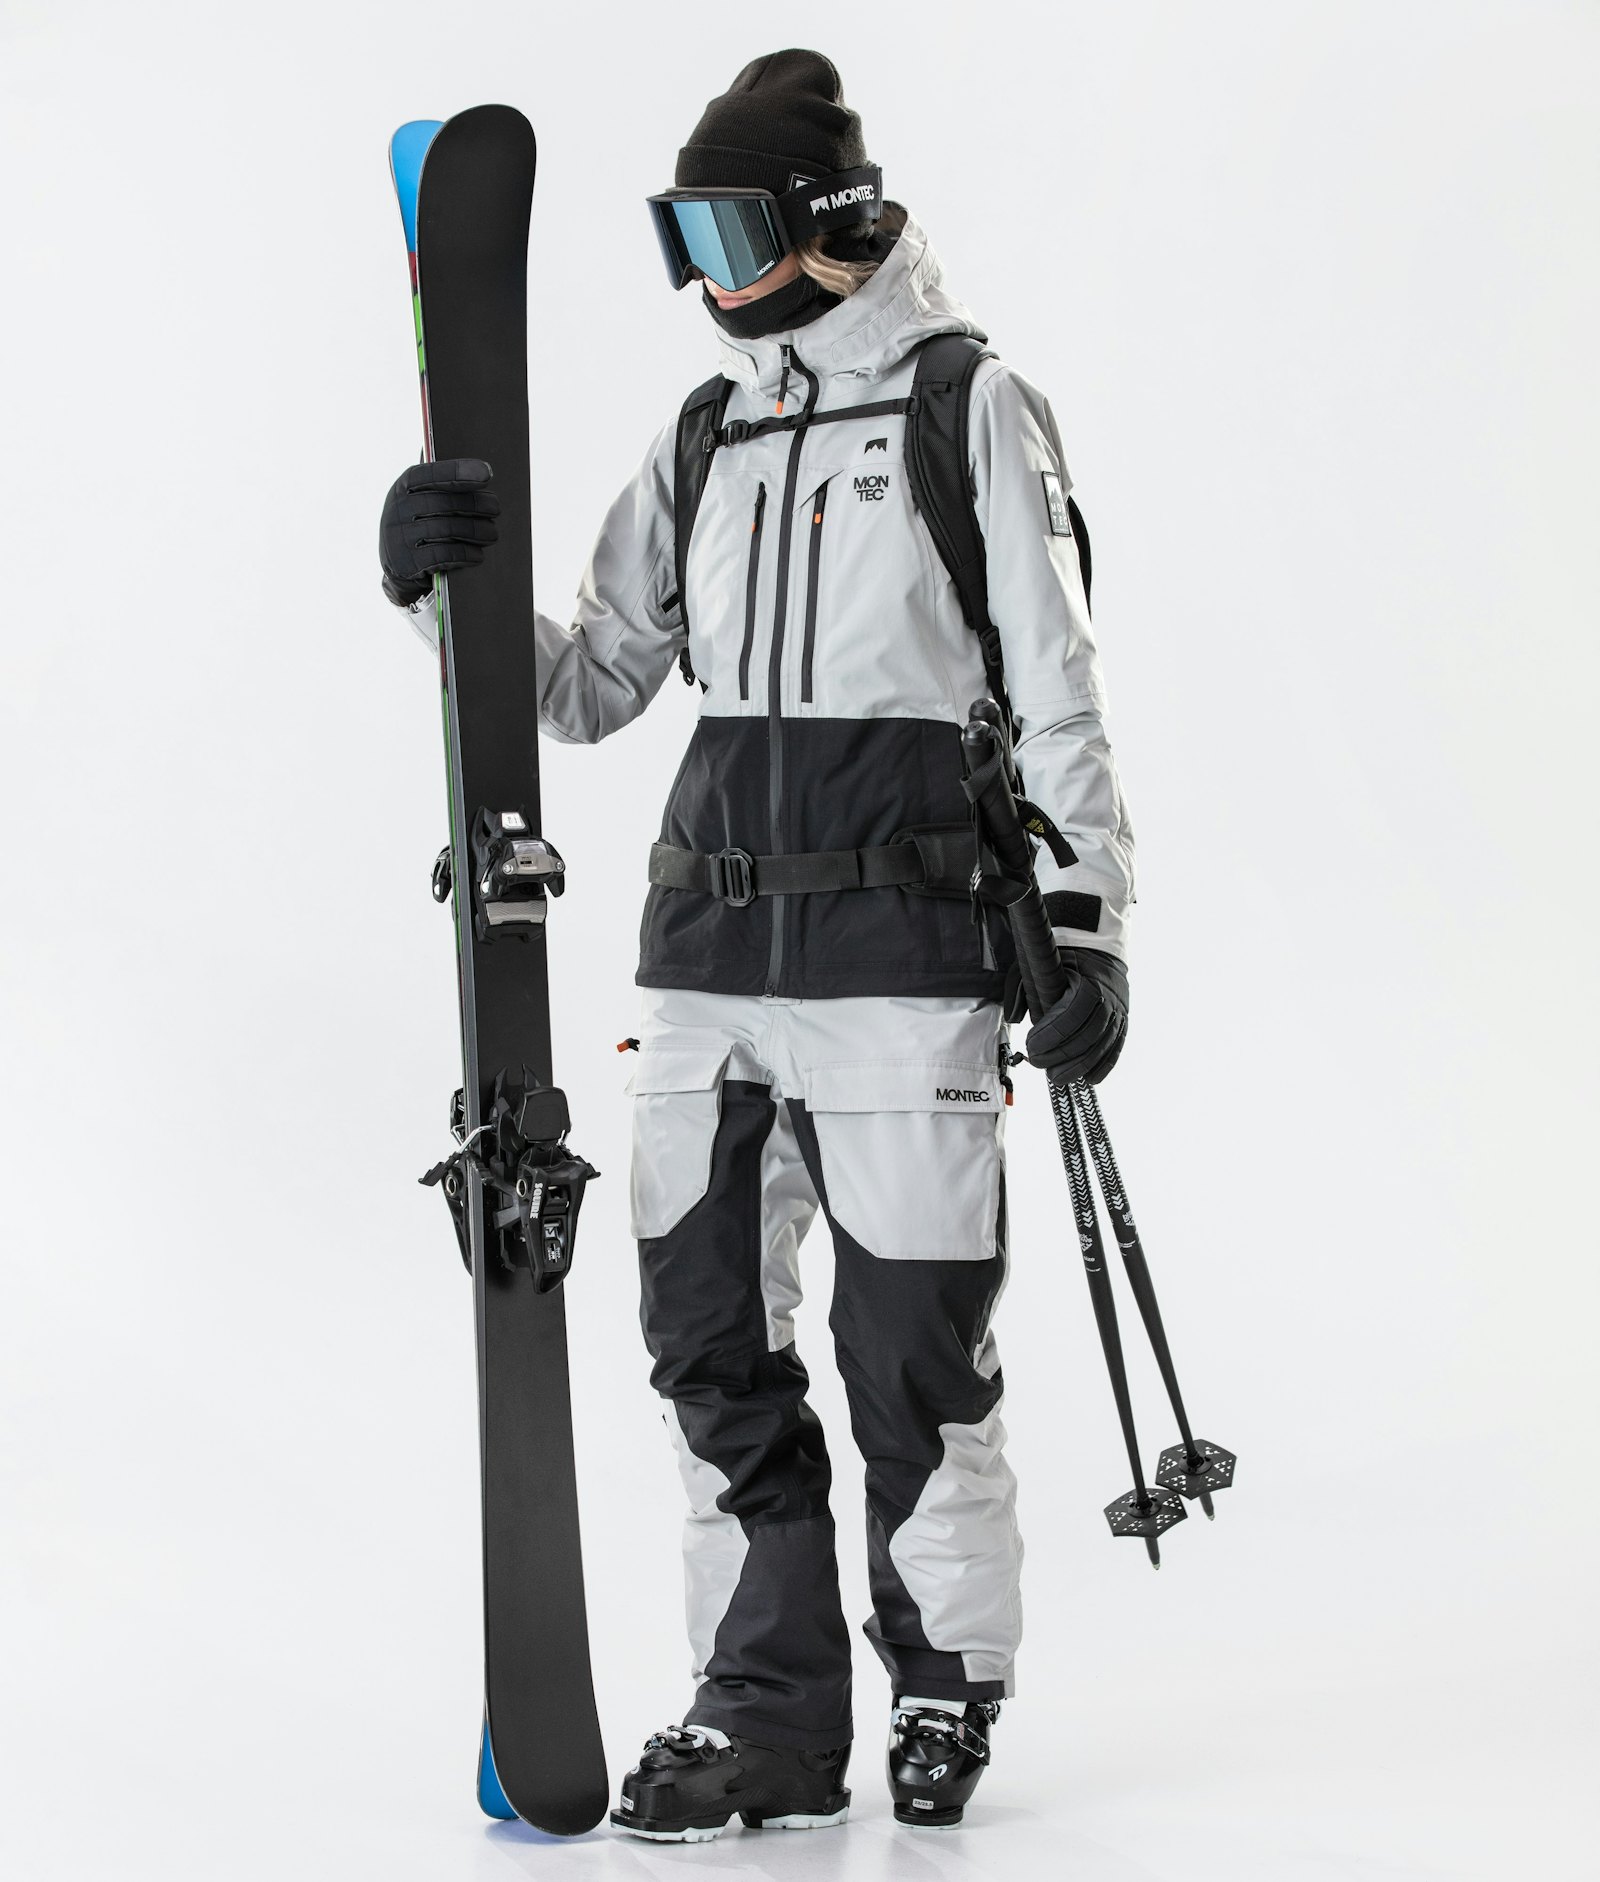 Moss W 2020 Ski Jacket Women Light Grey/Black